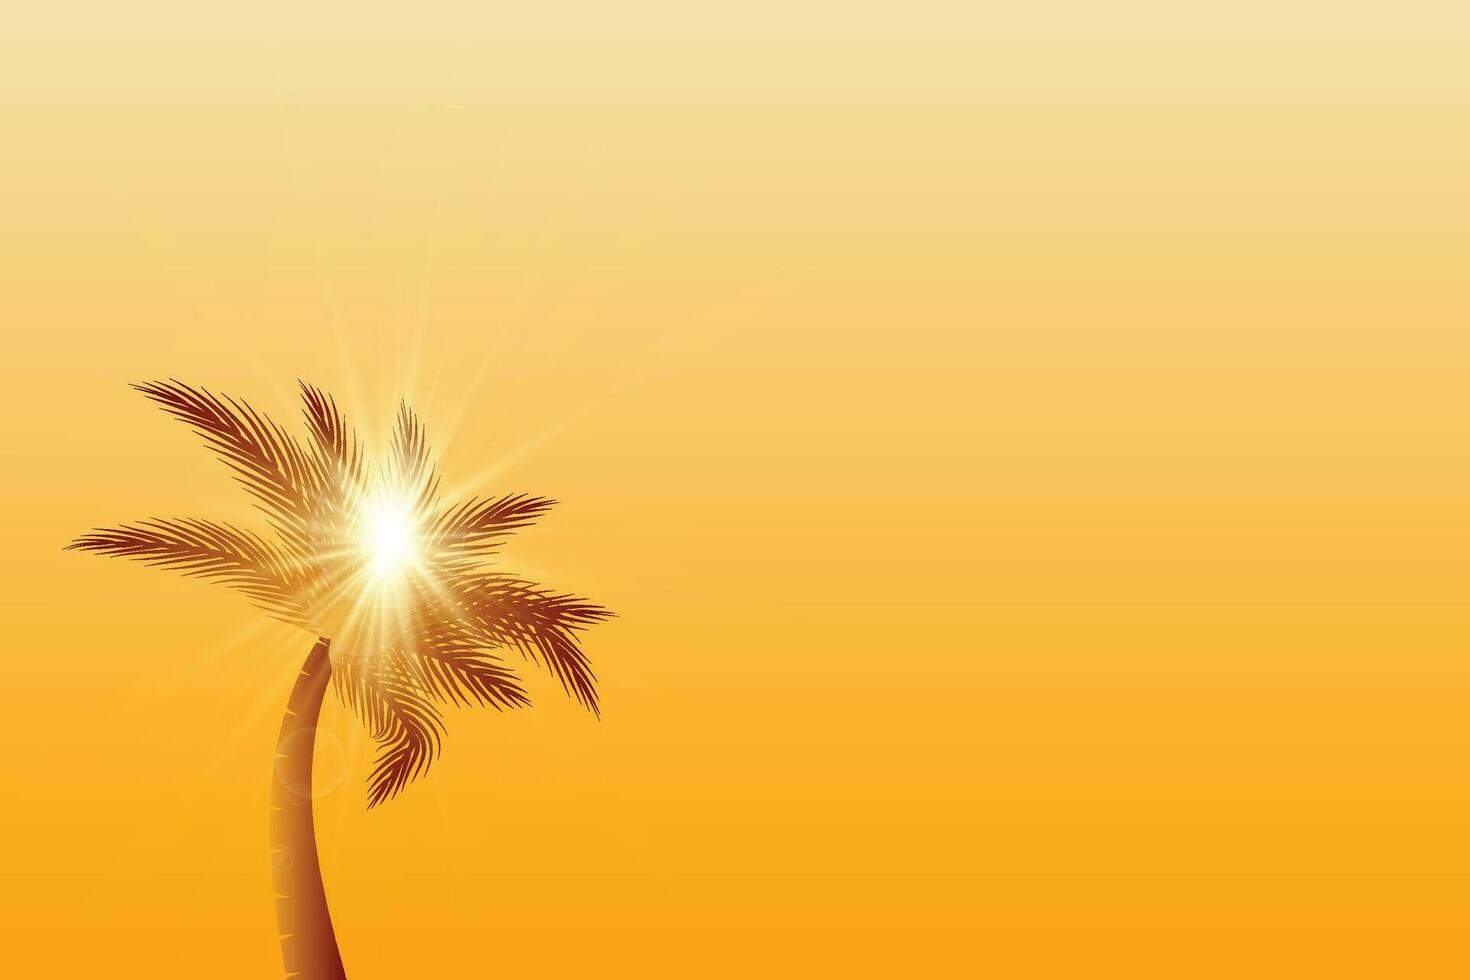 gyllene handflatan träd med solljus, Sol stråle, och vit moln samling för naturlig landskap illustration design vektor